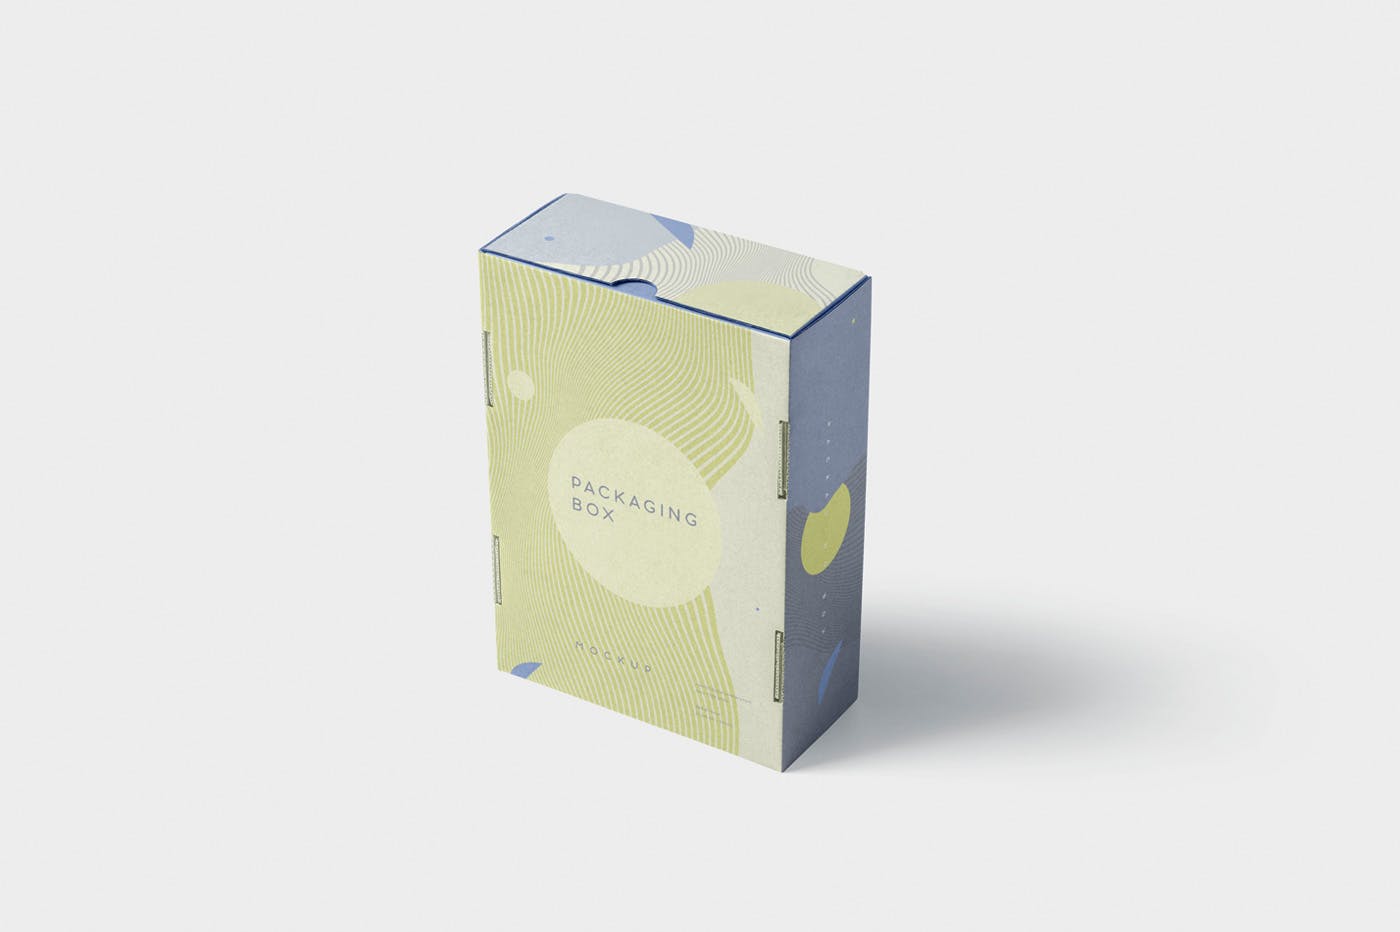 矩形包装盒设计效果图多角度预览样机 5 Rectangular Packaging Box Mockups插图(2)